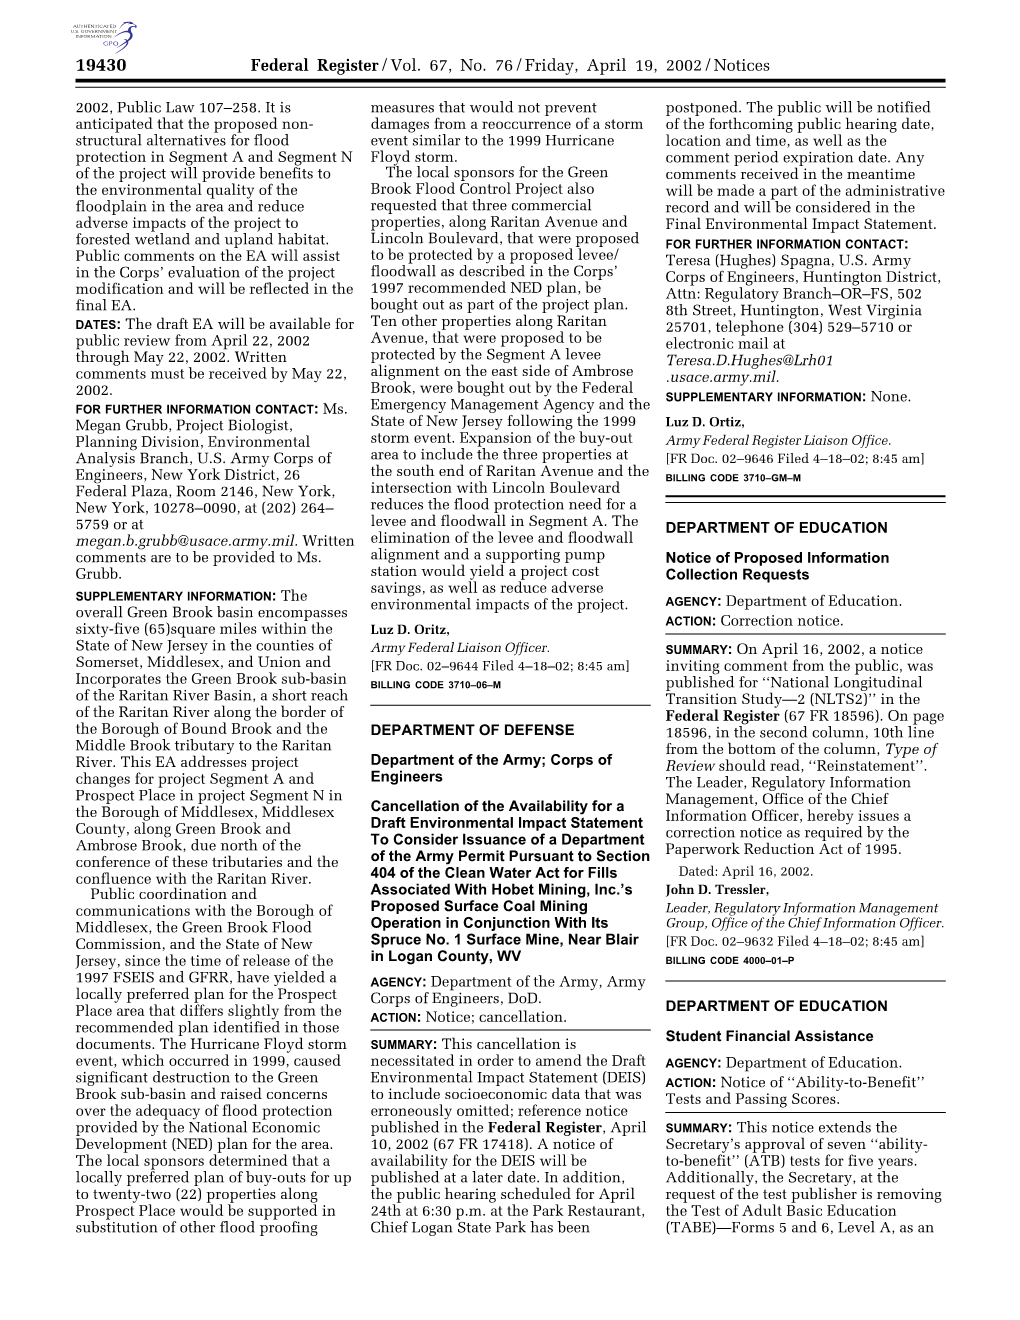 Federal Register/Vol. 67, No. 76/Friday, April 19, 2002/Notices